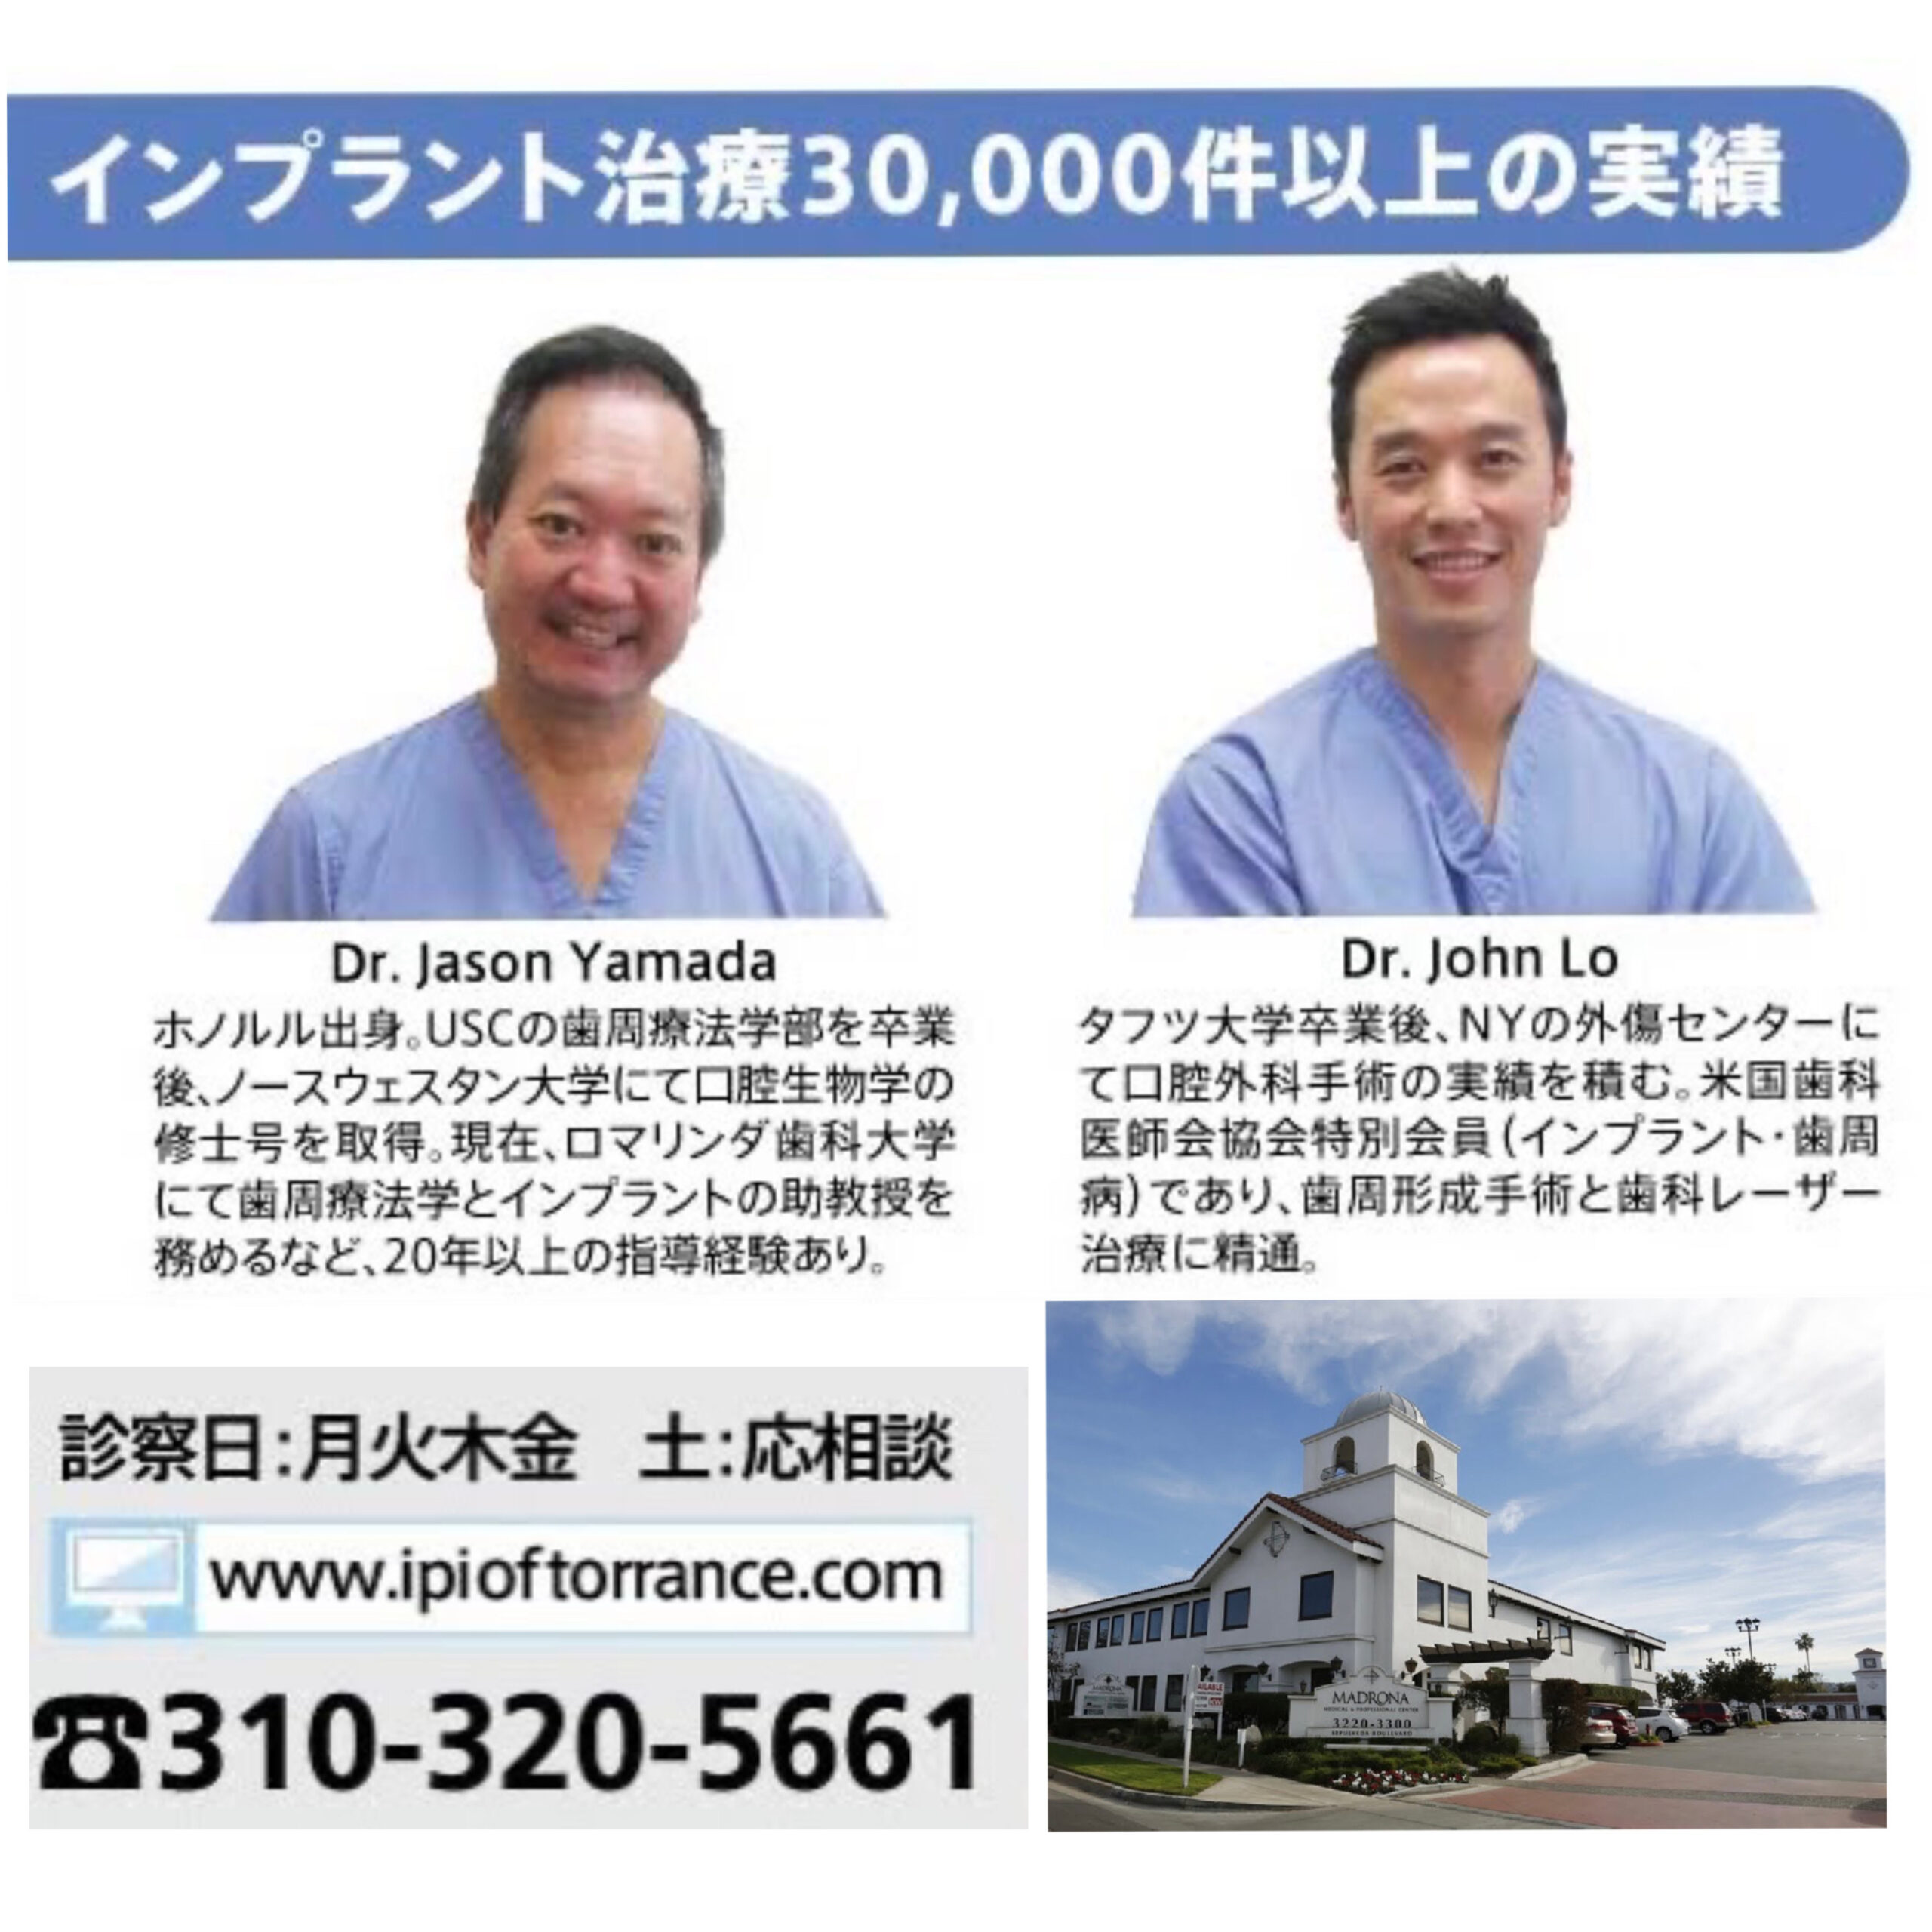 Implant & Periodontal Institute of Torrance / ドクター山田＆ドクター・ロー歯科医院のメイン写真